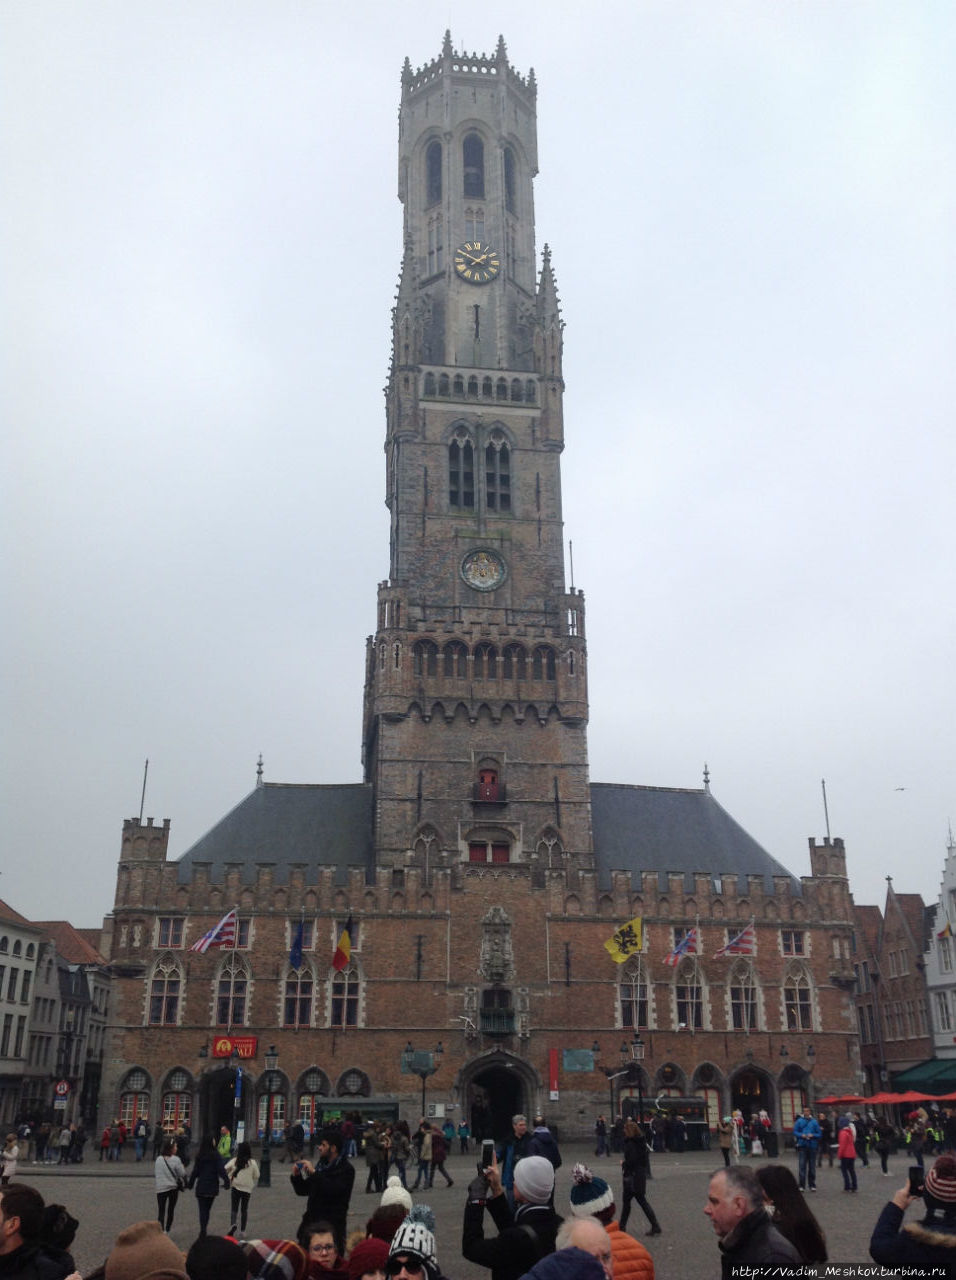 Дозорная башня Белфорт (построена в 1240, расширена в результате реконструкции в 1483-87, в XVI в. был добавлен большой карийон), высотой 83 м, один из символов современного Брюгге; расположена на центральной (рыночной) площади города. Брюгге, Бельгия